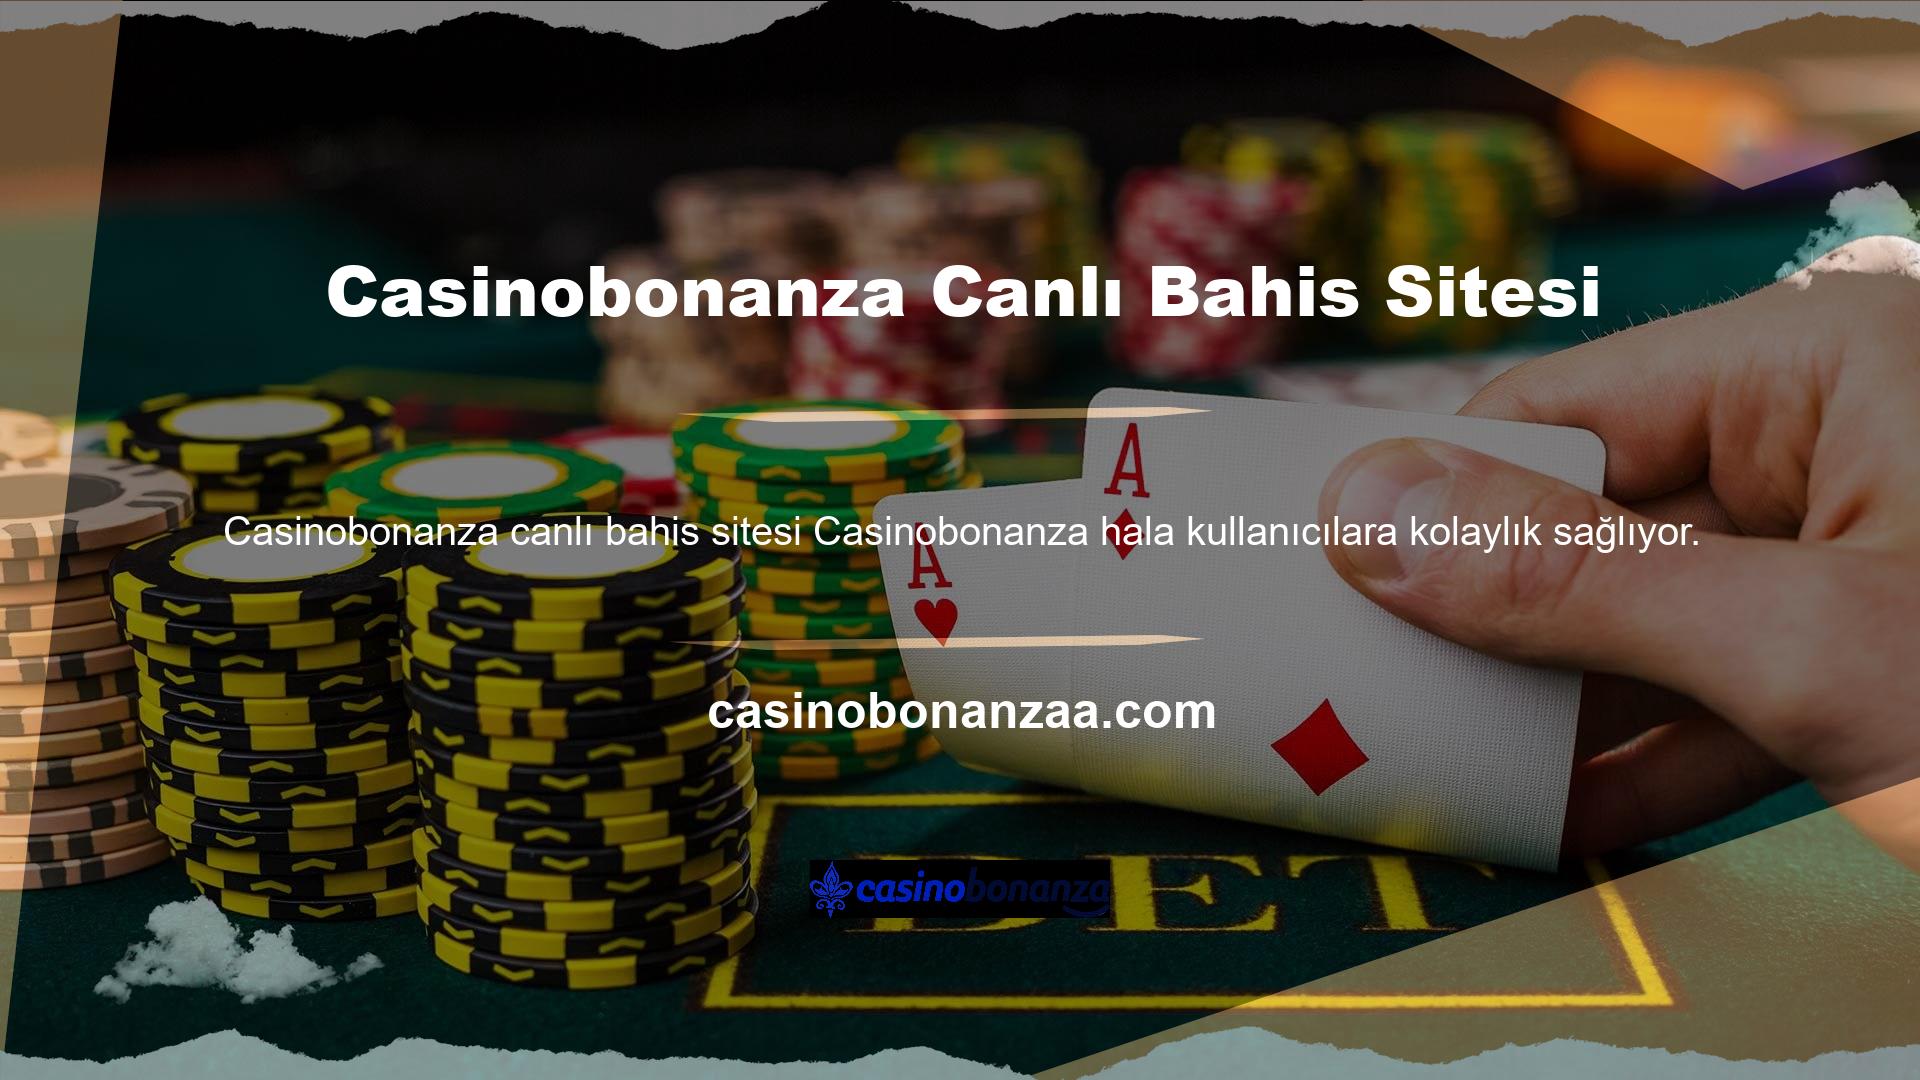 Canlı bir casino sitesi yönetilmekte ve üyelere internet bağlantısı olan herhangi bir cihazdan Casinobonanza giriş web sitesine erişim sağlayan bir mobil uygulama sağlanmaktadır